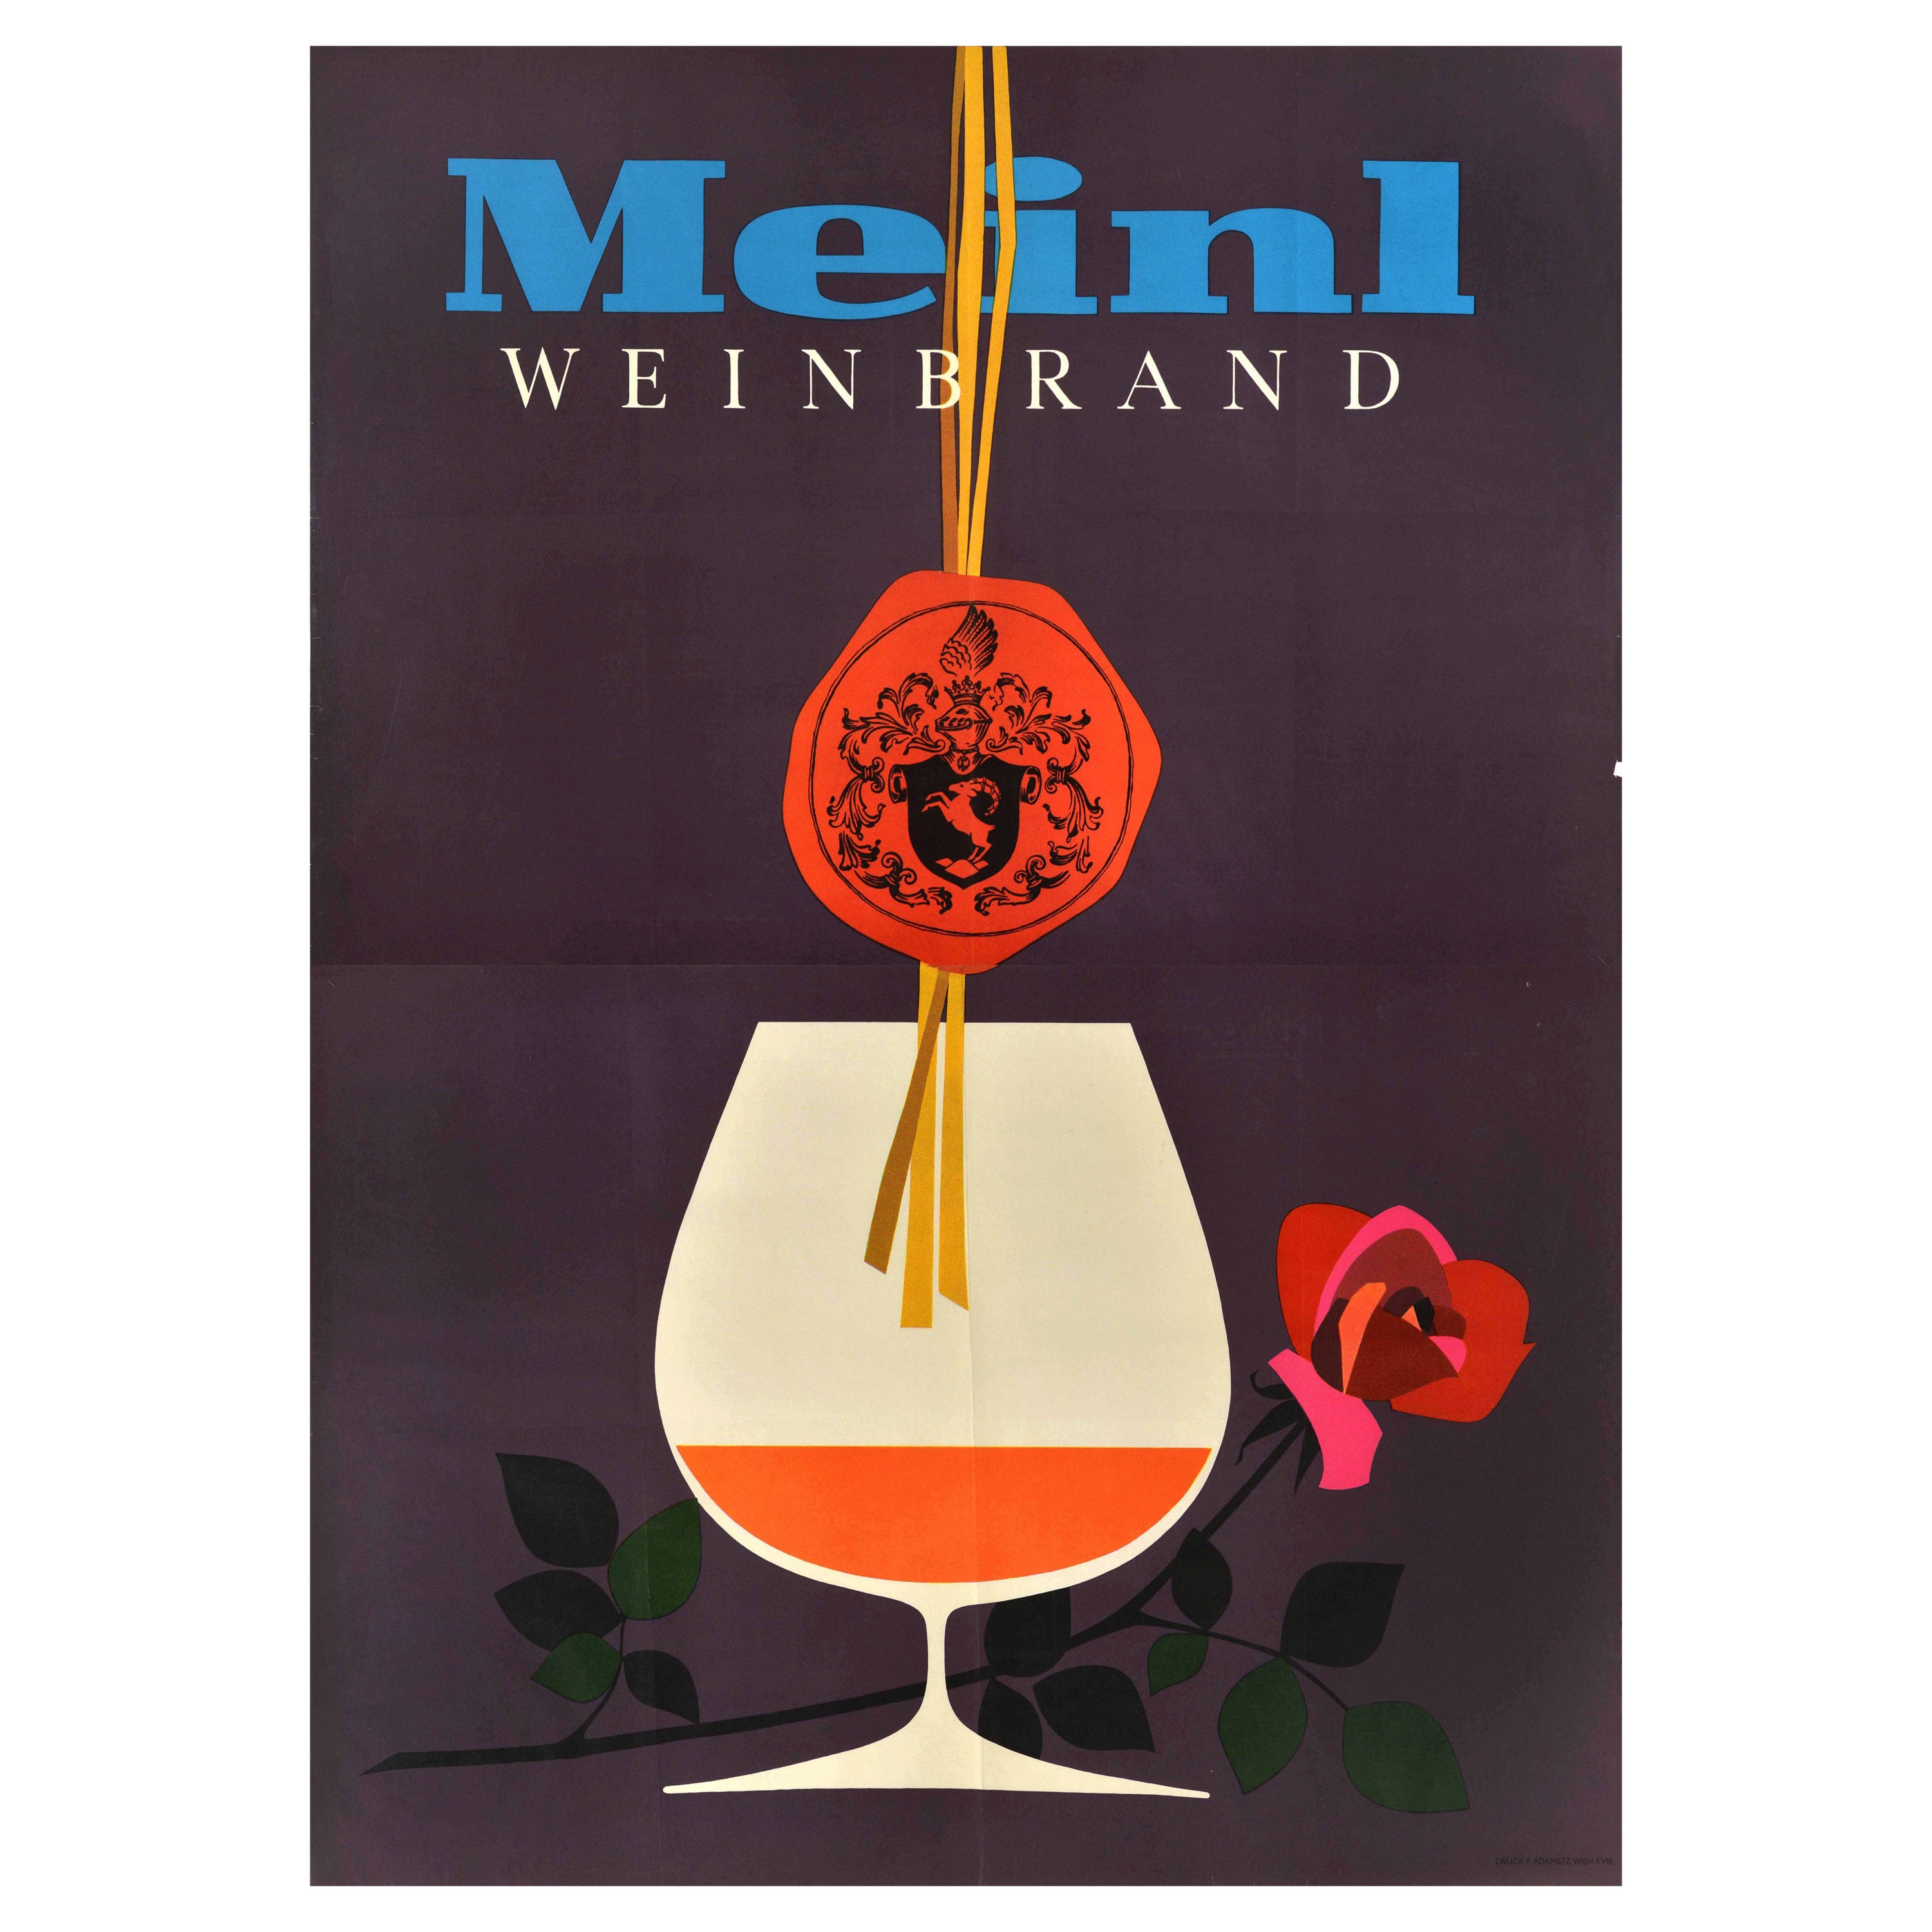 Affiche publicitaire originale vintage pour les boissons Meinl Weinbrand Brandy Cognac Alcohol